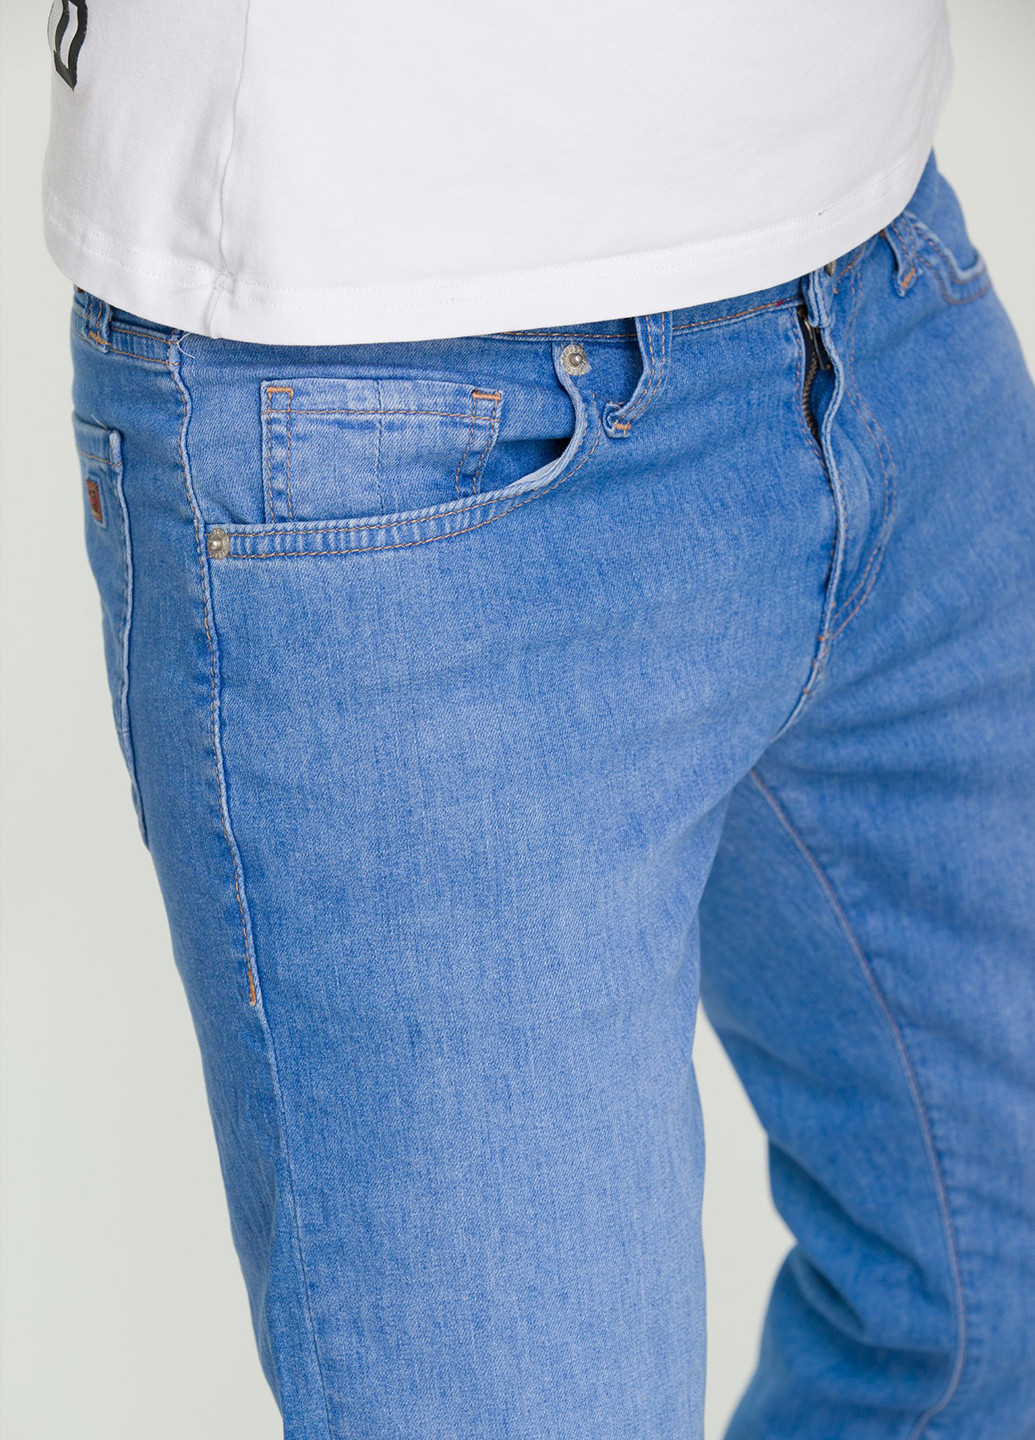 Голубые демисезонные прямые джинсы Trend Collection